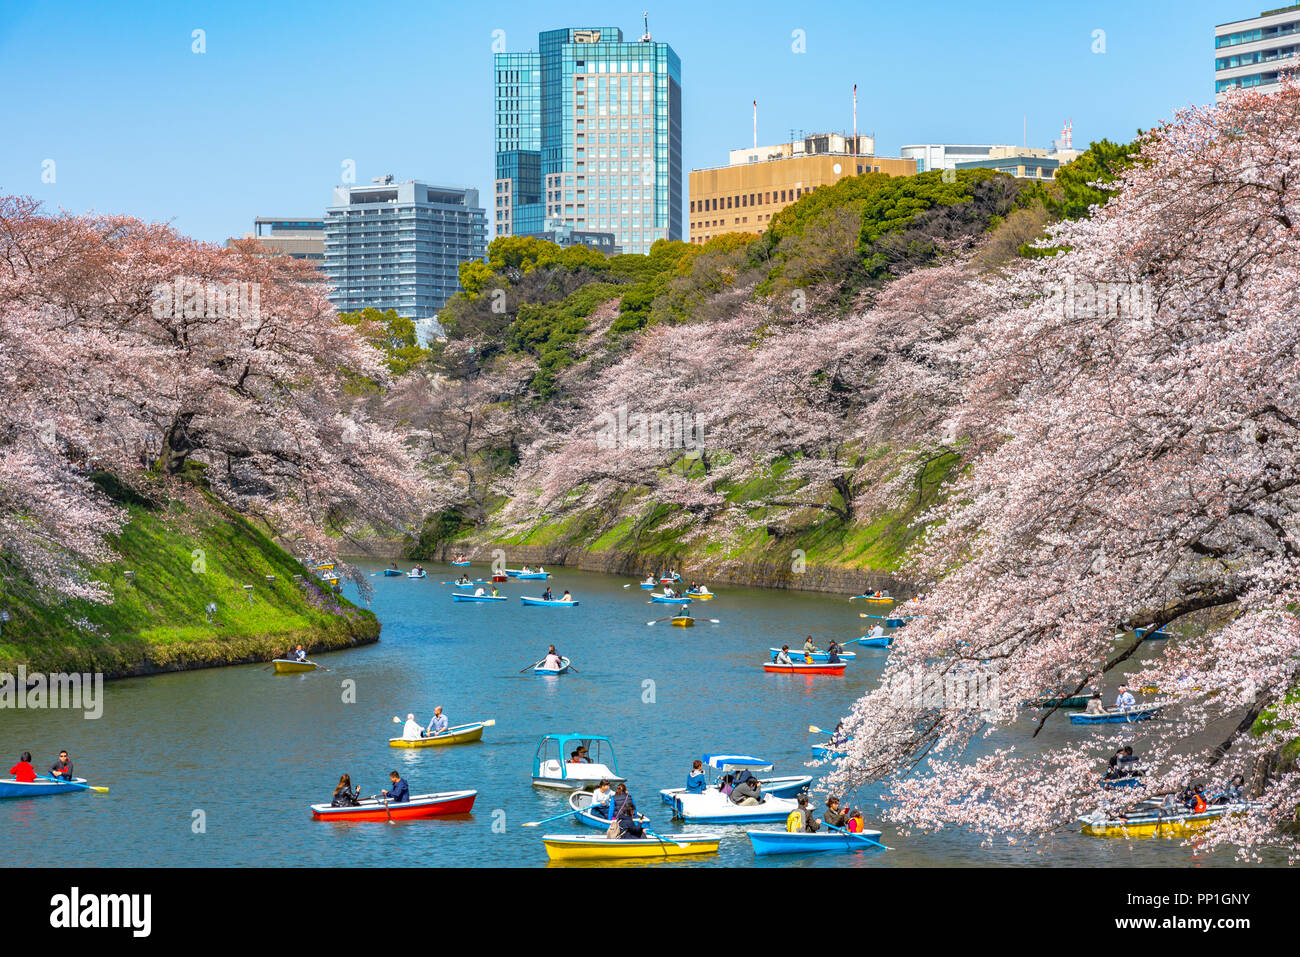 La cerise fleurit autour de Chidorigafuchi Park, Tokyo, Japon. La partie la plus septentrionale de son château est aujourd'hui un parc Chidorigafuchi nom Park. Banque D'Images